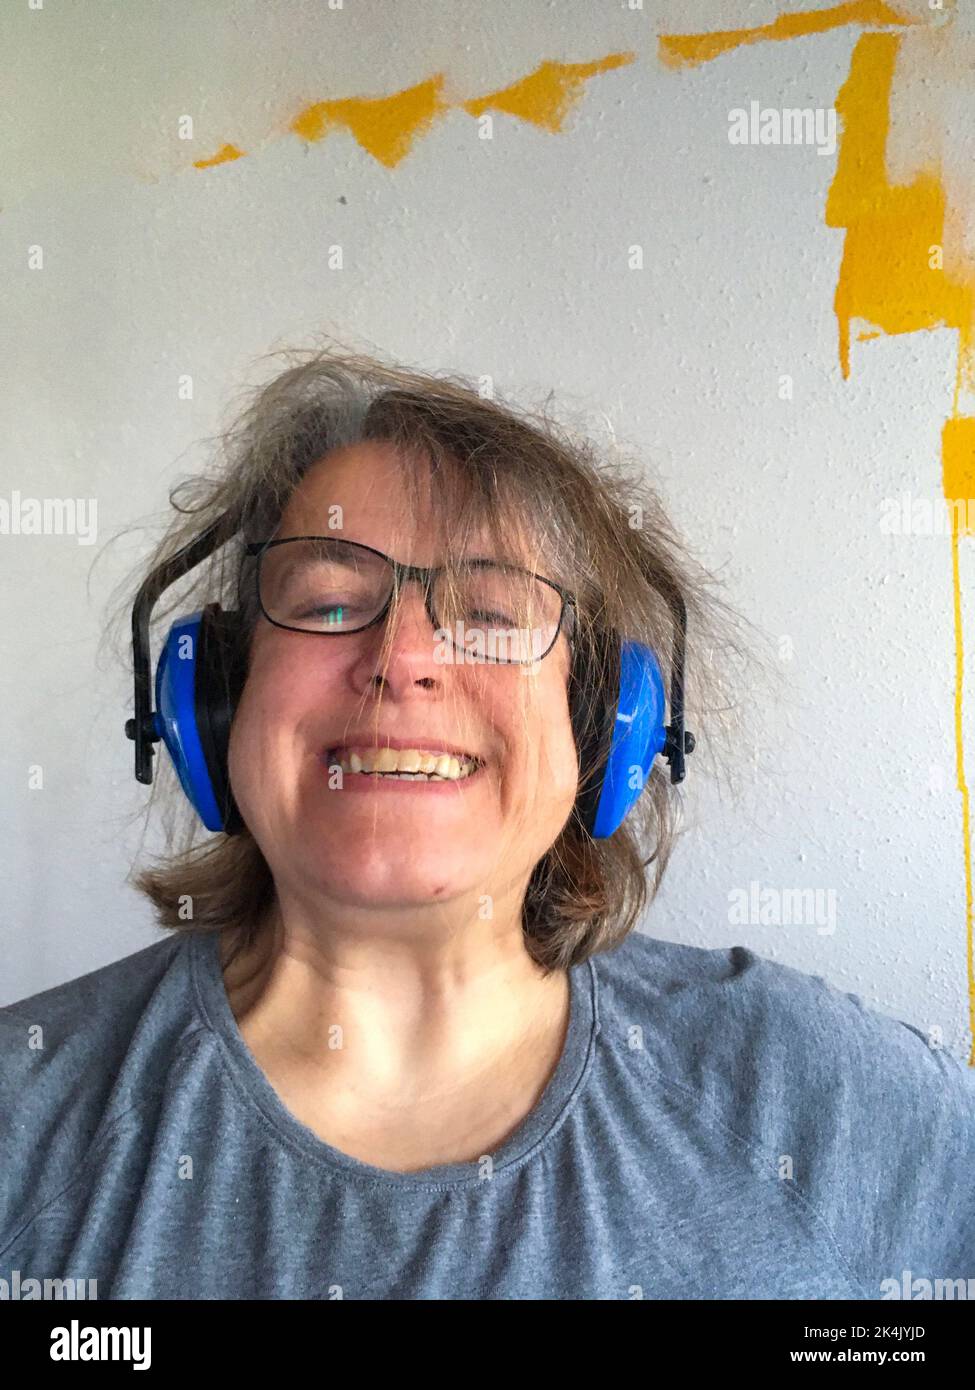 Frau mit Kopfhörer mit zerzausten Haaren, genervt vom Lärm Foto Stock